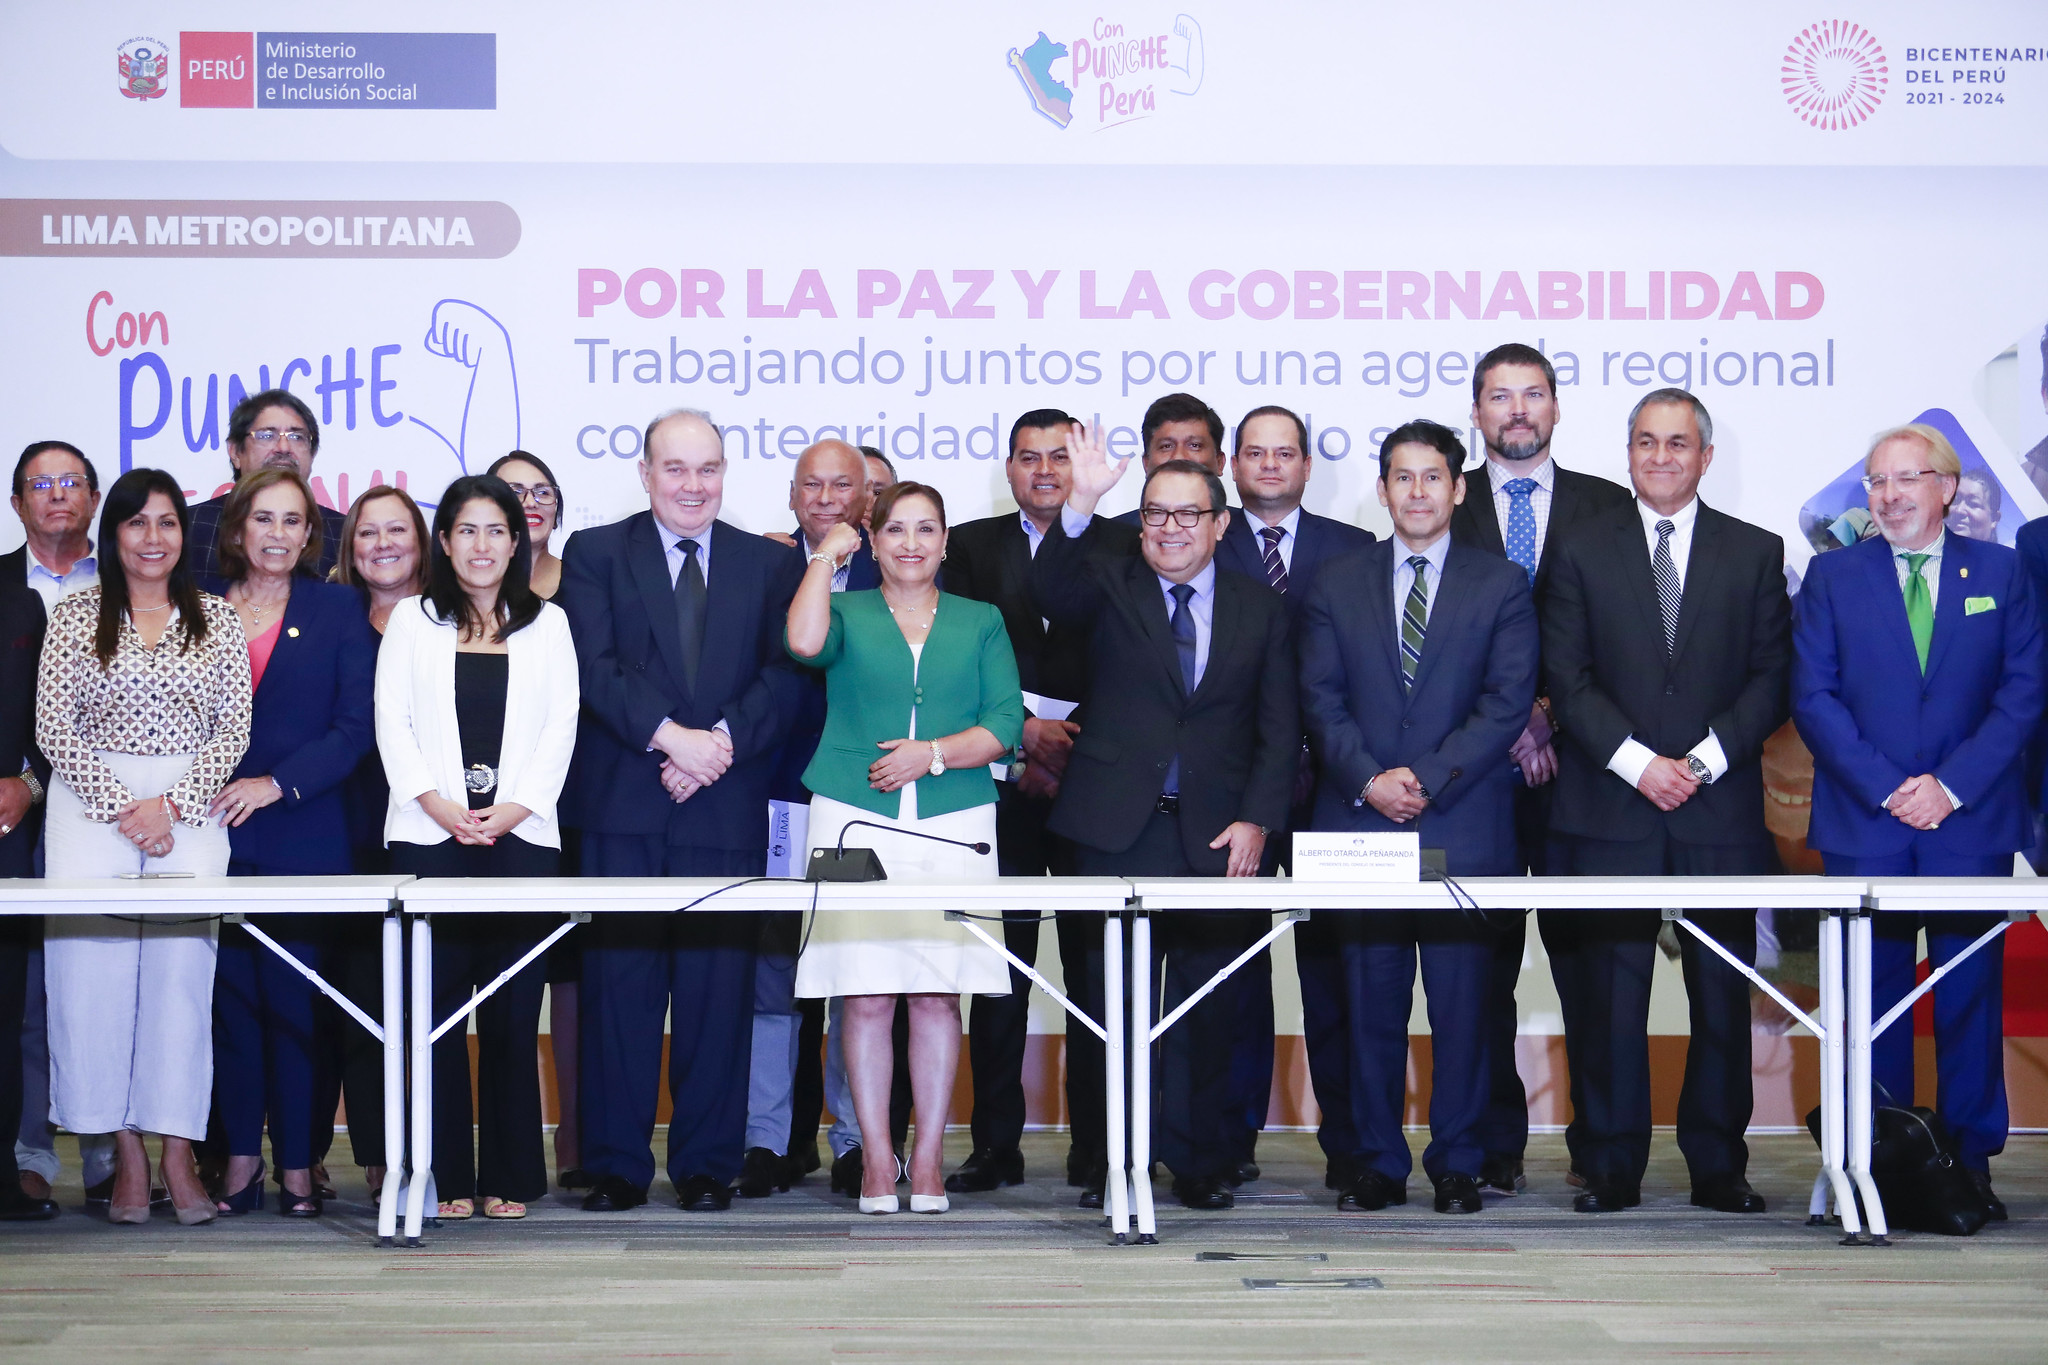 PERÚ: Presidenta Boluarte anuncia que 3,500 policías se incorporarán a labores de patrullaje y prevención del delito en todo Lima